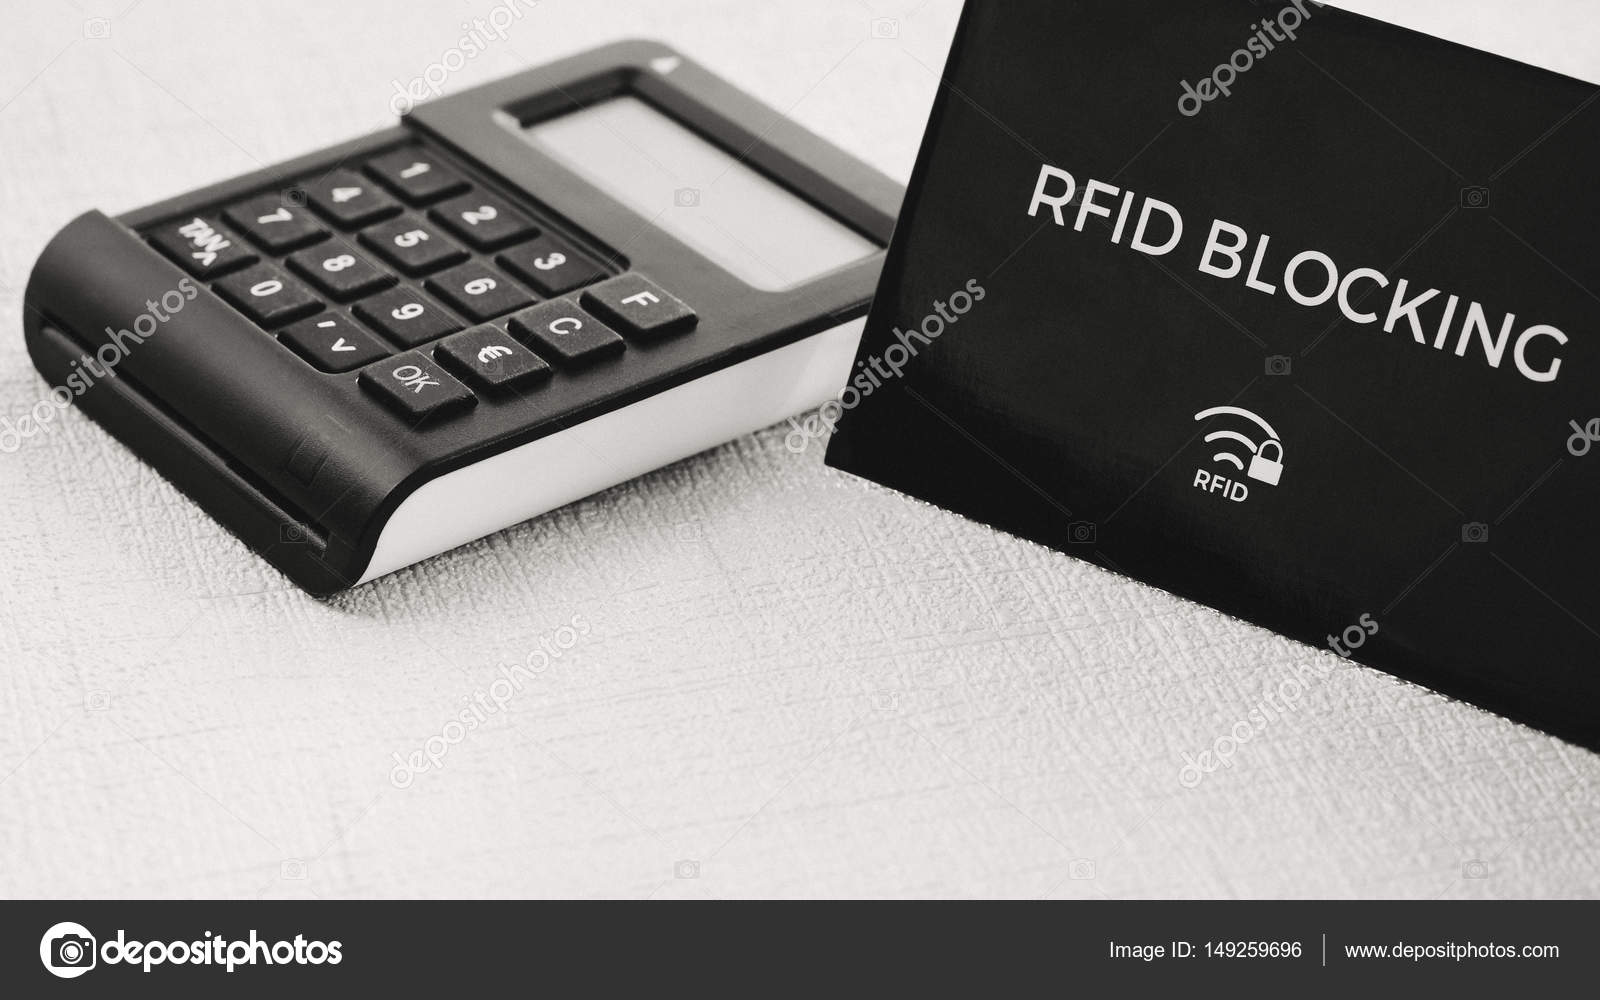 Rfid Schutzhülle für sichere Kreditkarte vor Hackerangriff,  Bräunungsgenerator in der Mitte - Stockfotografie: lizenzfreie Fotos ©  igor_tichonow 149259696